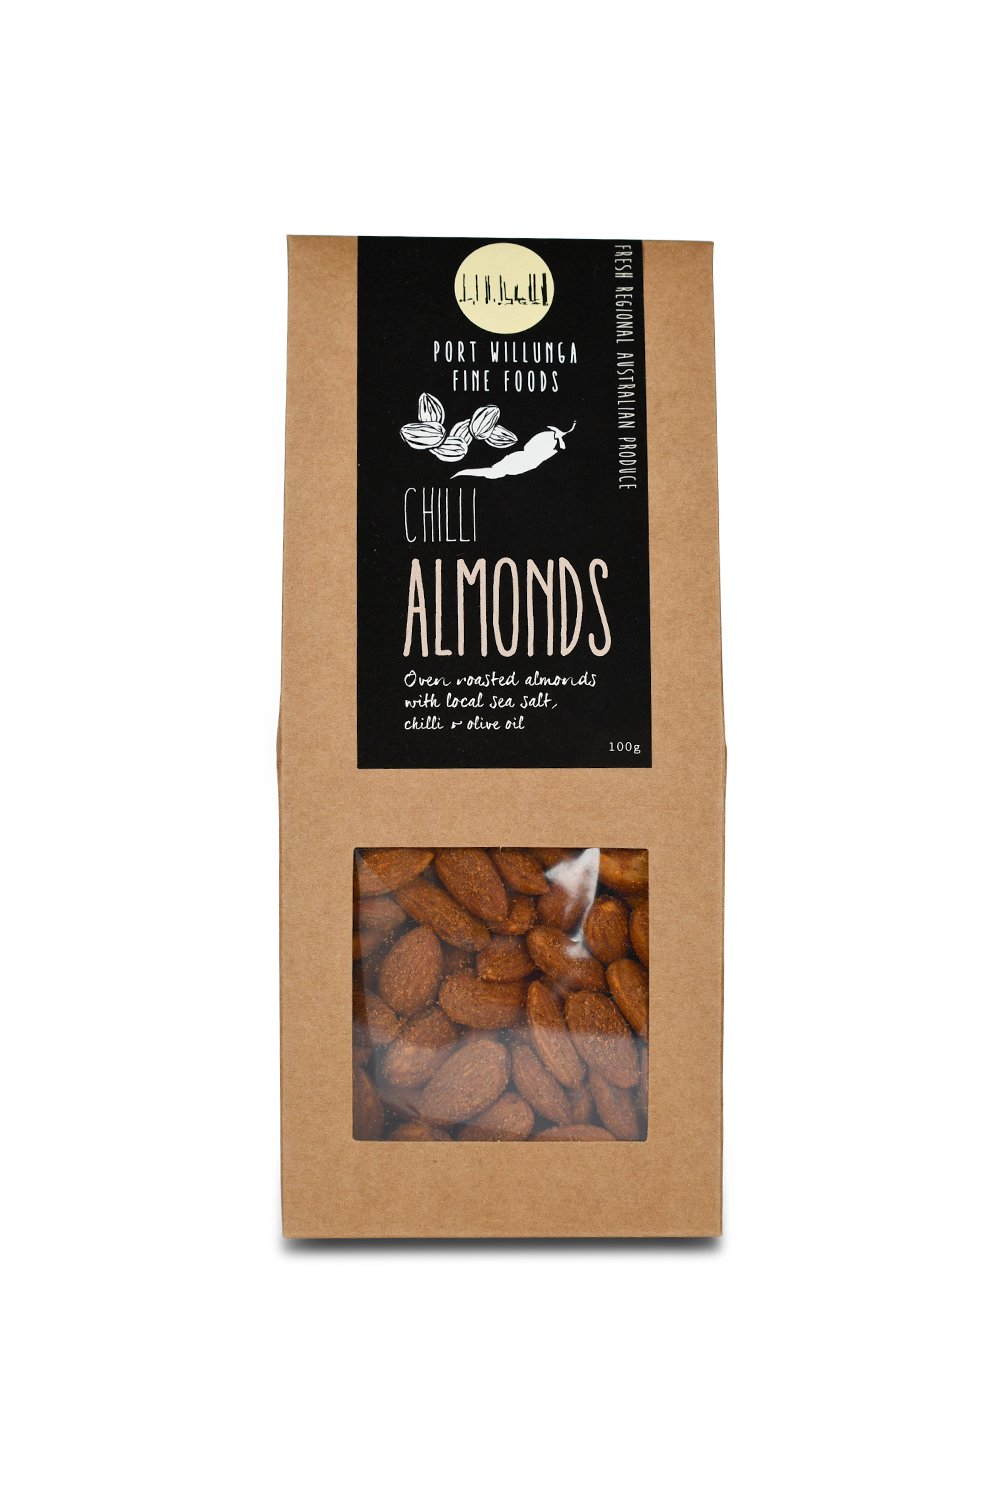 Chilli Almonds